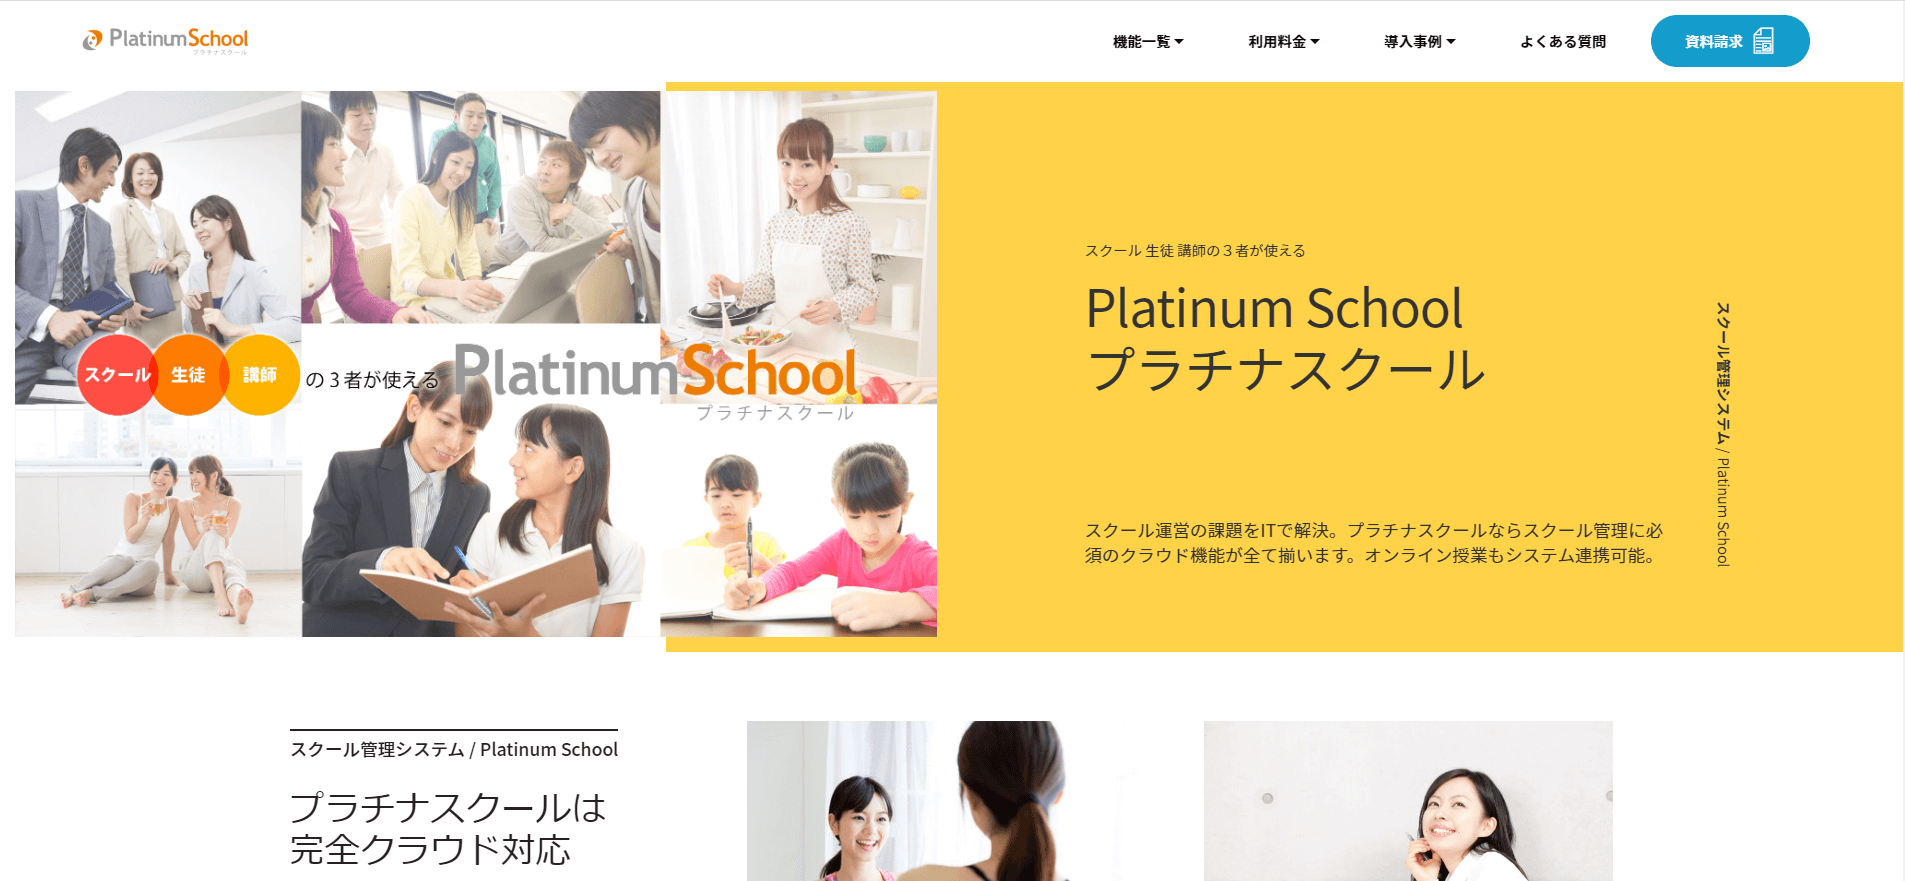 学習塾管理システムのPlatinum School